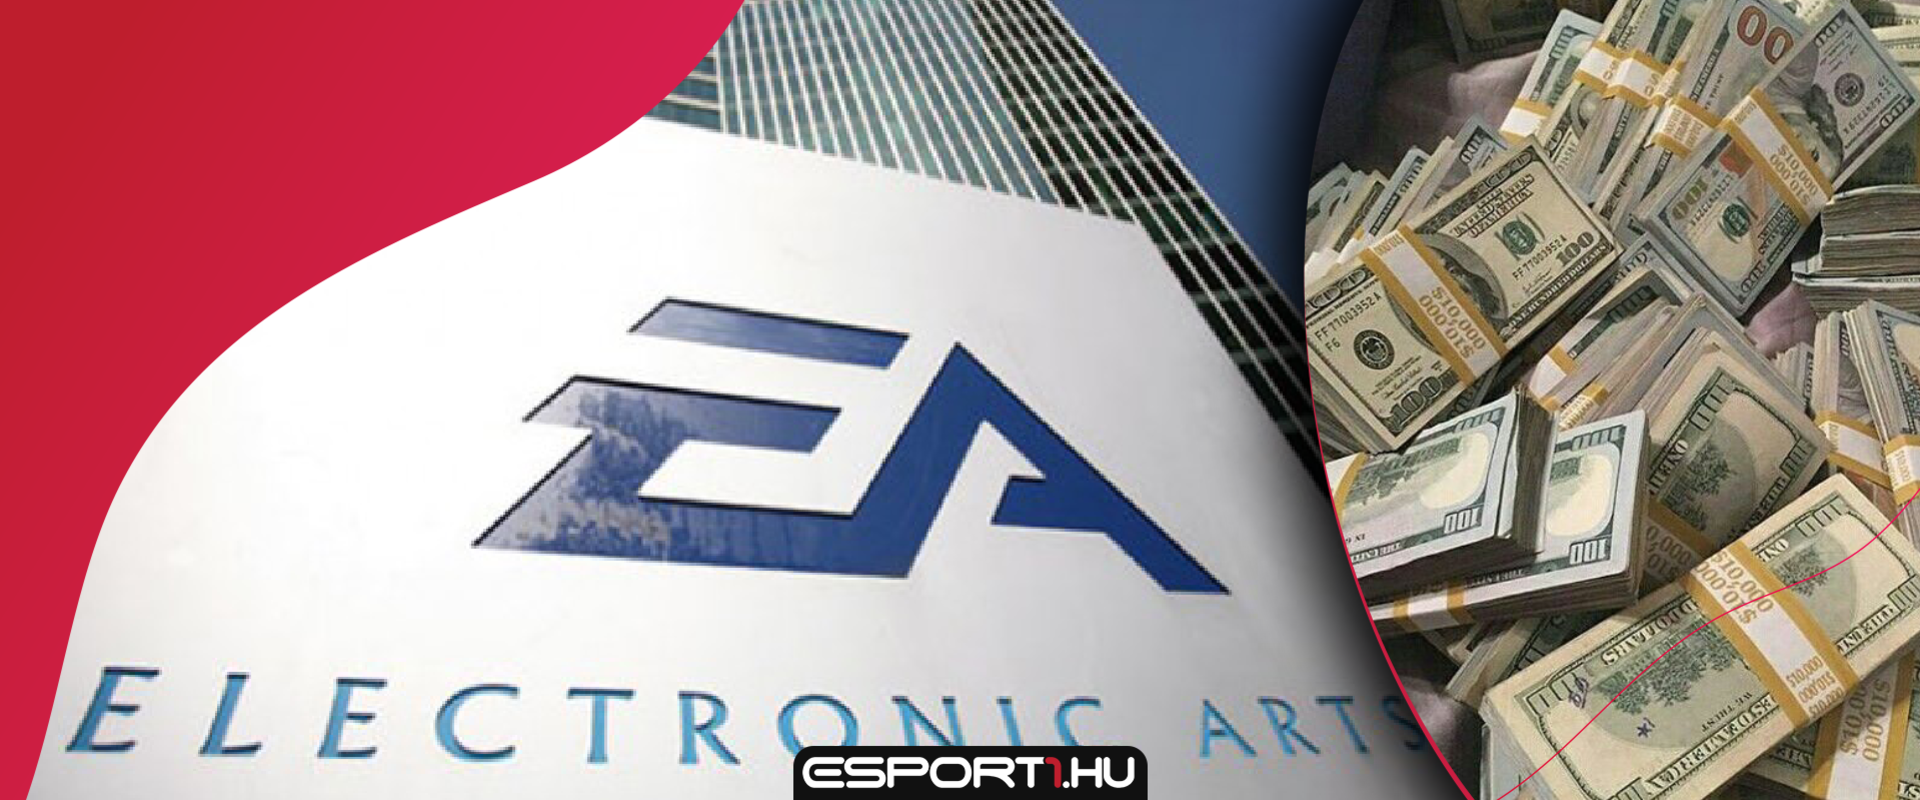 Ennyi pénzt még sohasem keresett az EA a mikrotranzakciókkal!